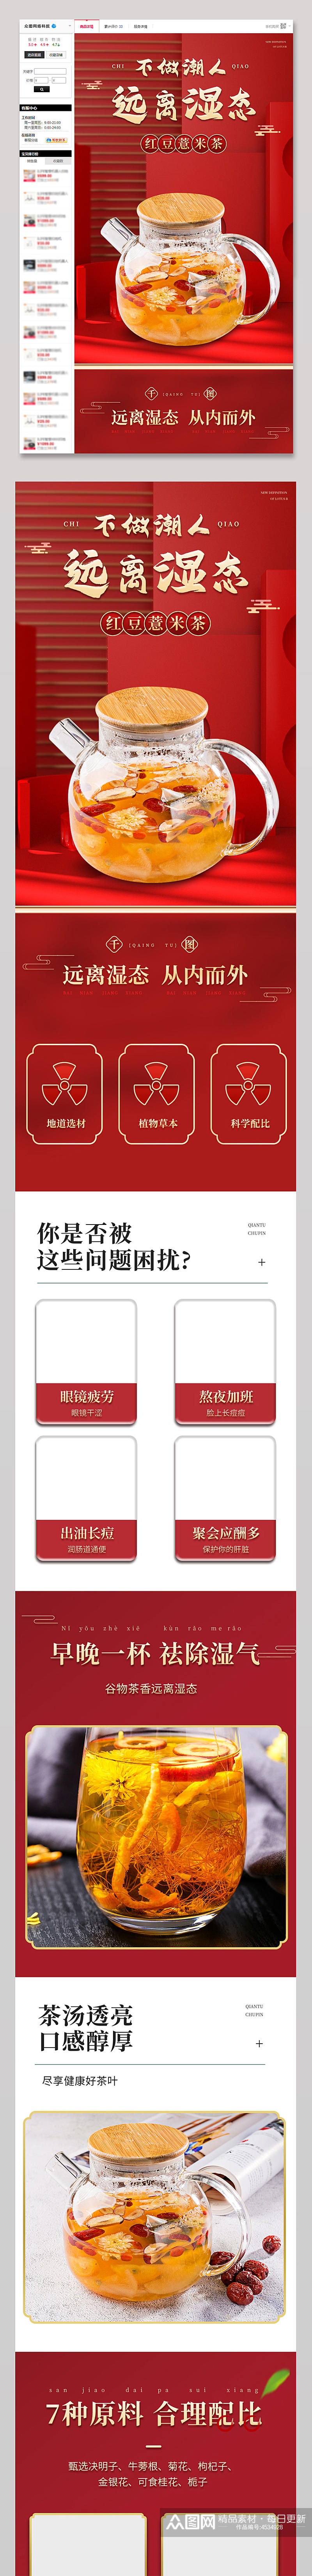 红豆薏米茶电商淘宝详情页设计模板素材